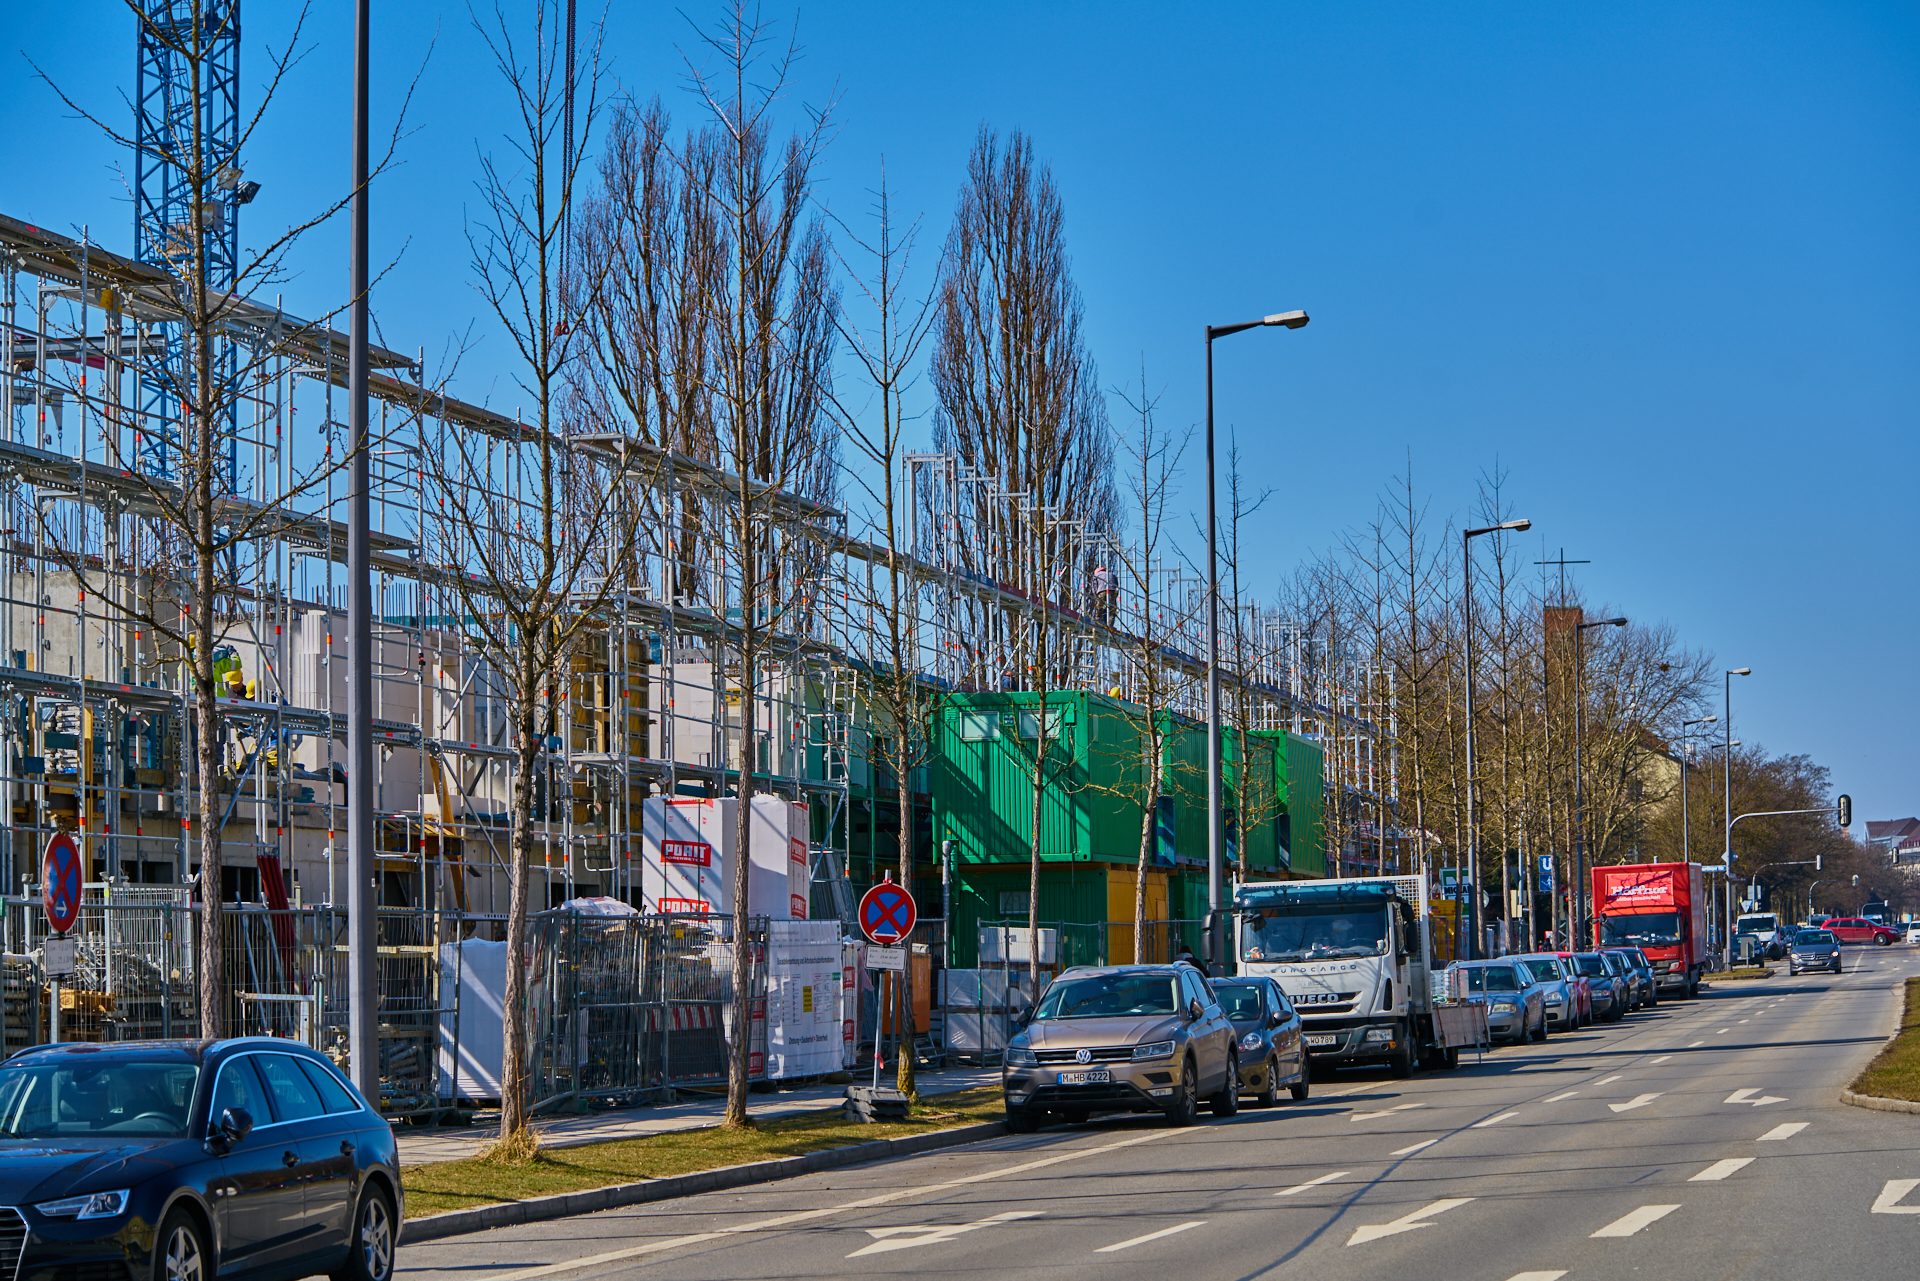 24.03.2018 - Baustelle Maikäfersiedlung in der Bad Schachener Straße in Neuperlach